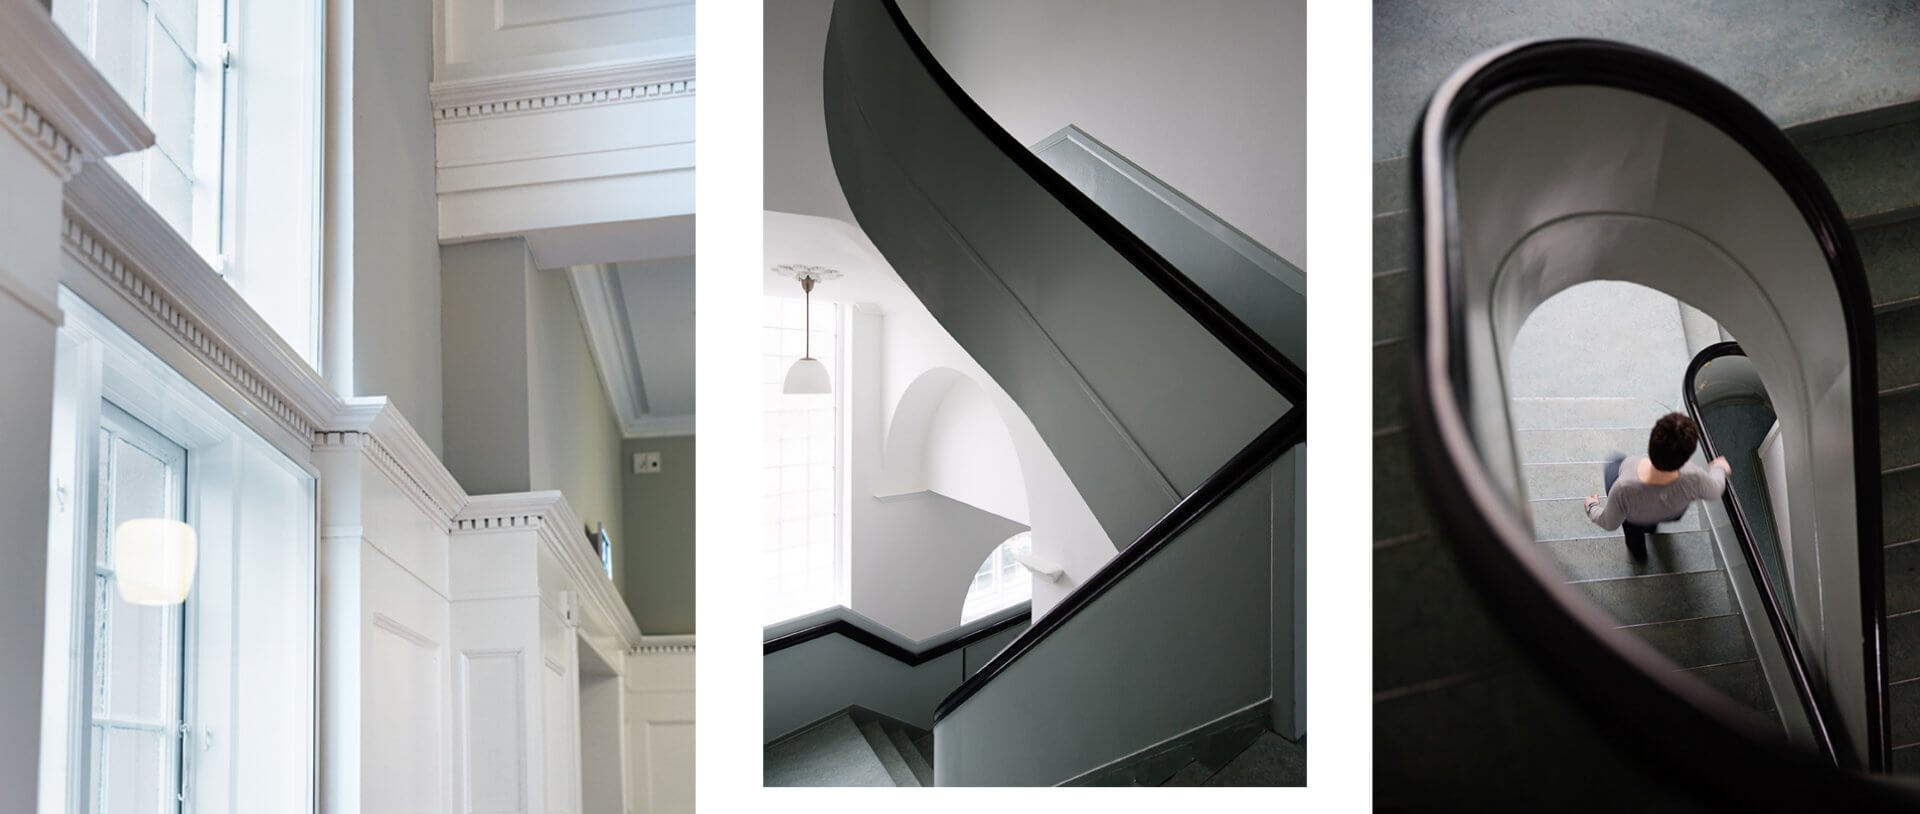 Farvesætning af trapper og paneler